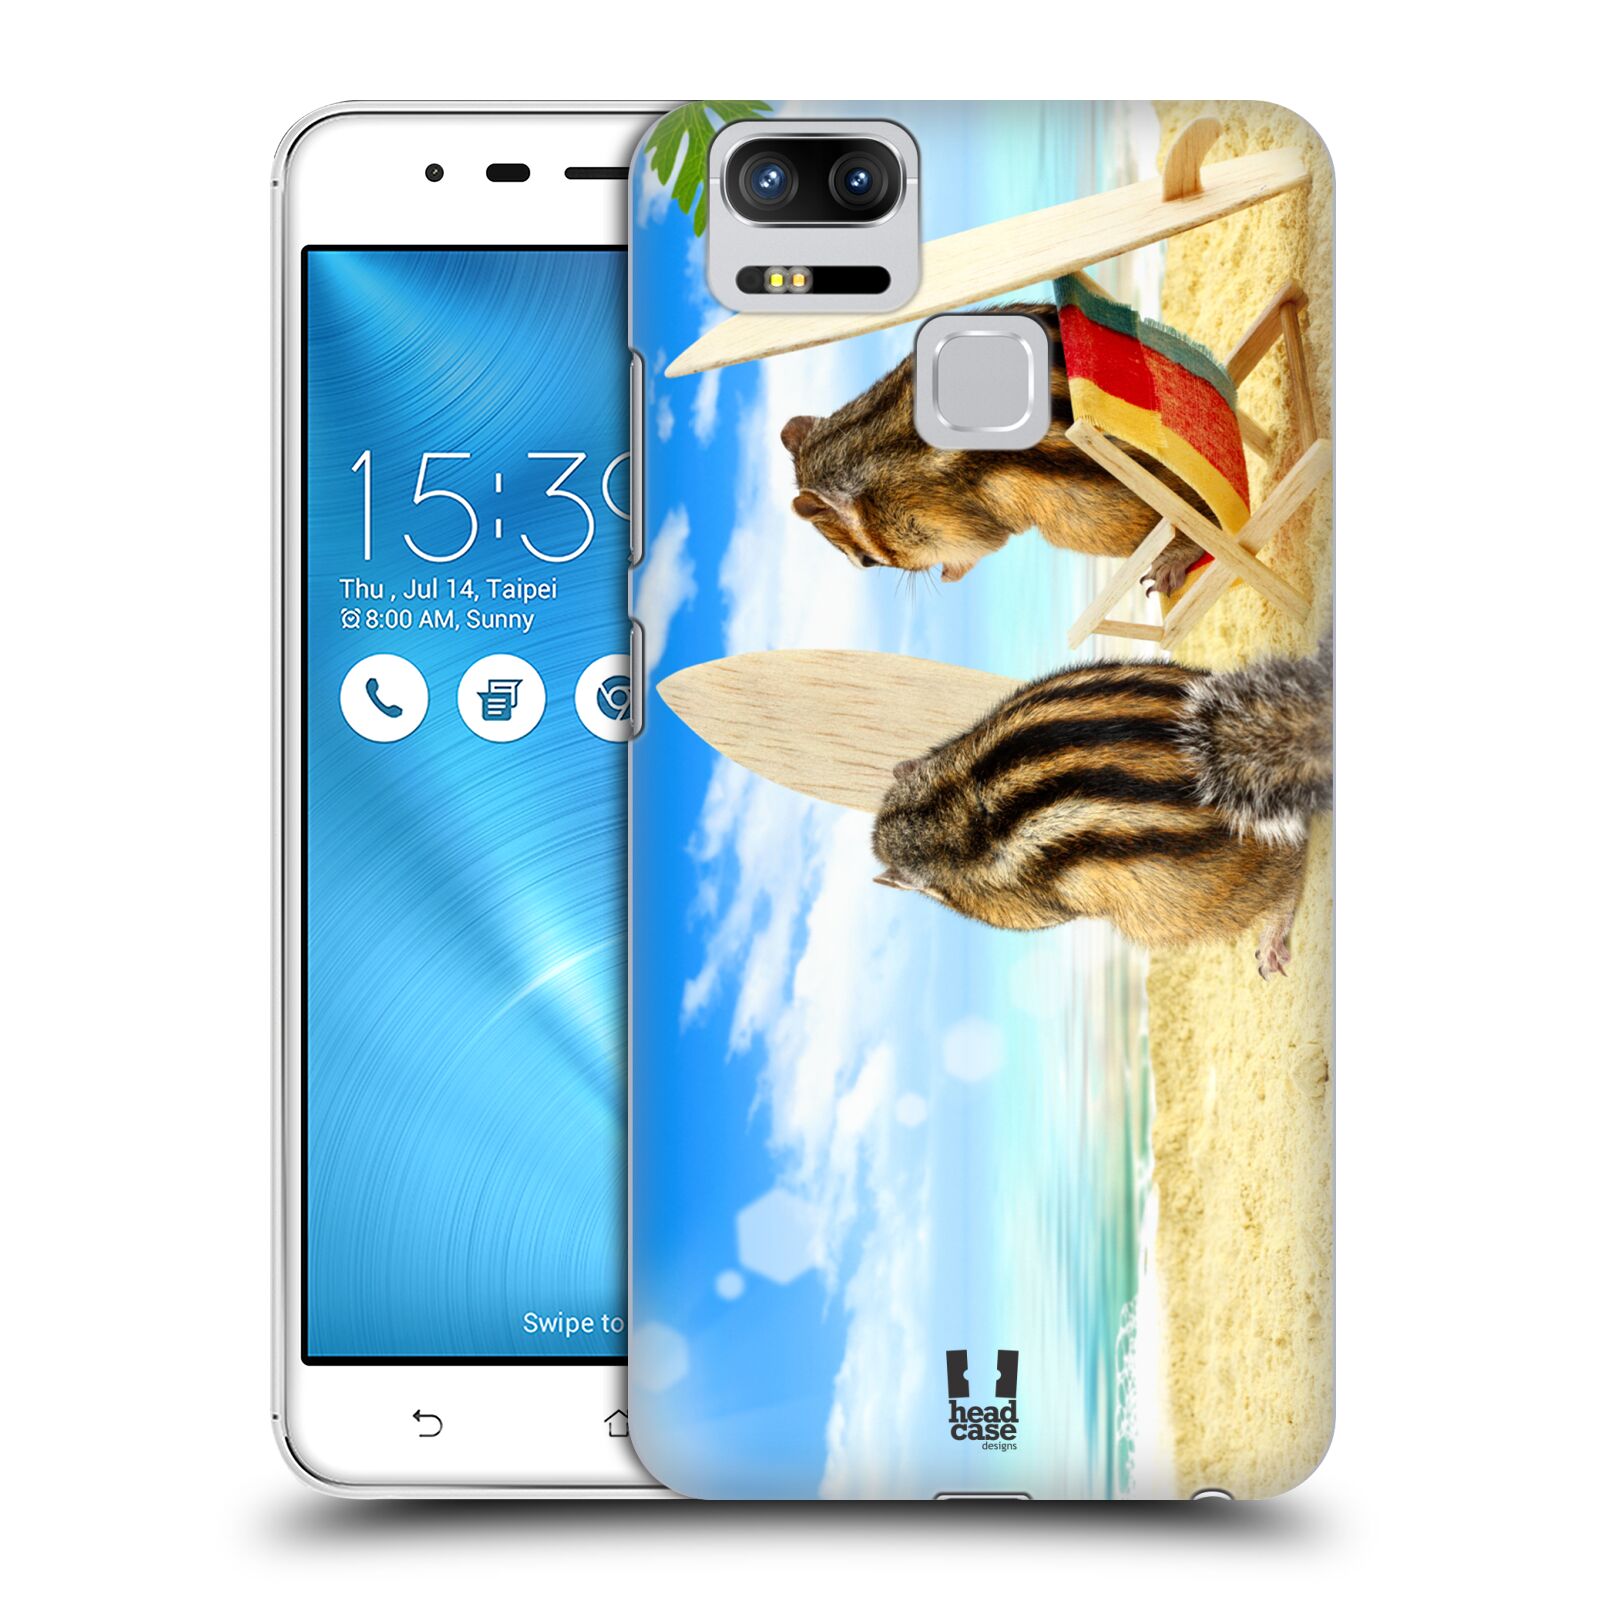 HEAD CASE plastový obal na mobil Asus Zenfone 3 Zoom ZE553KL vzor Legrační zvířátka veverky surfaři u moře